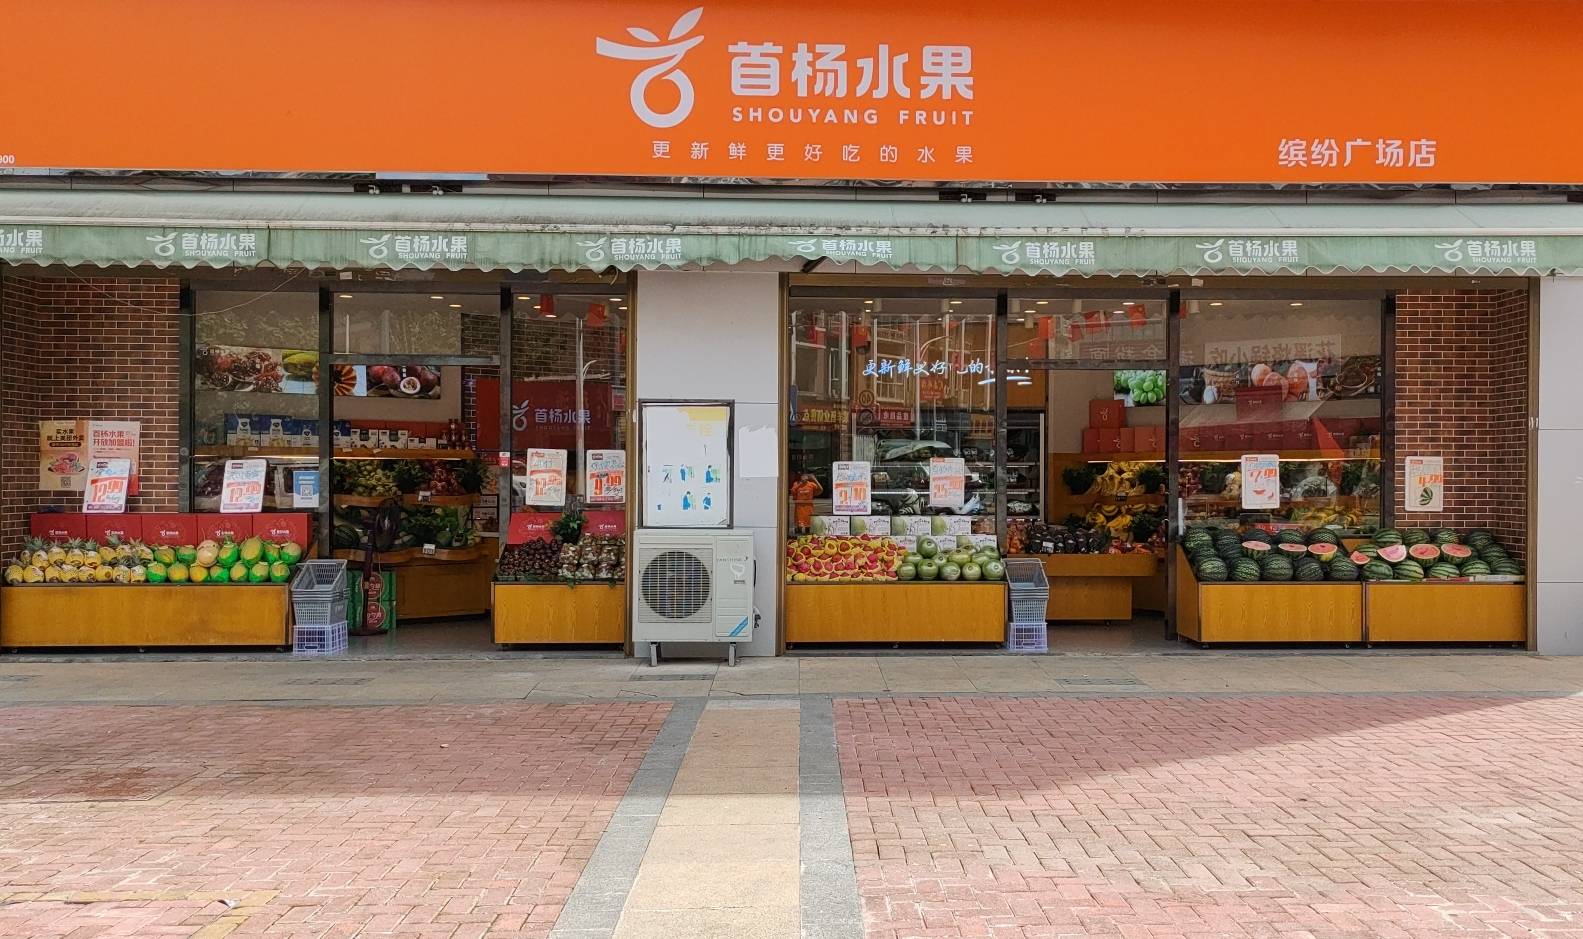 首杨水果:贵州知名水果连锁品牌,打造好口碑水果店